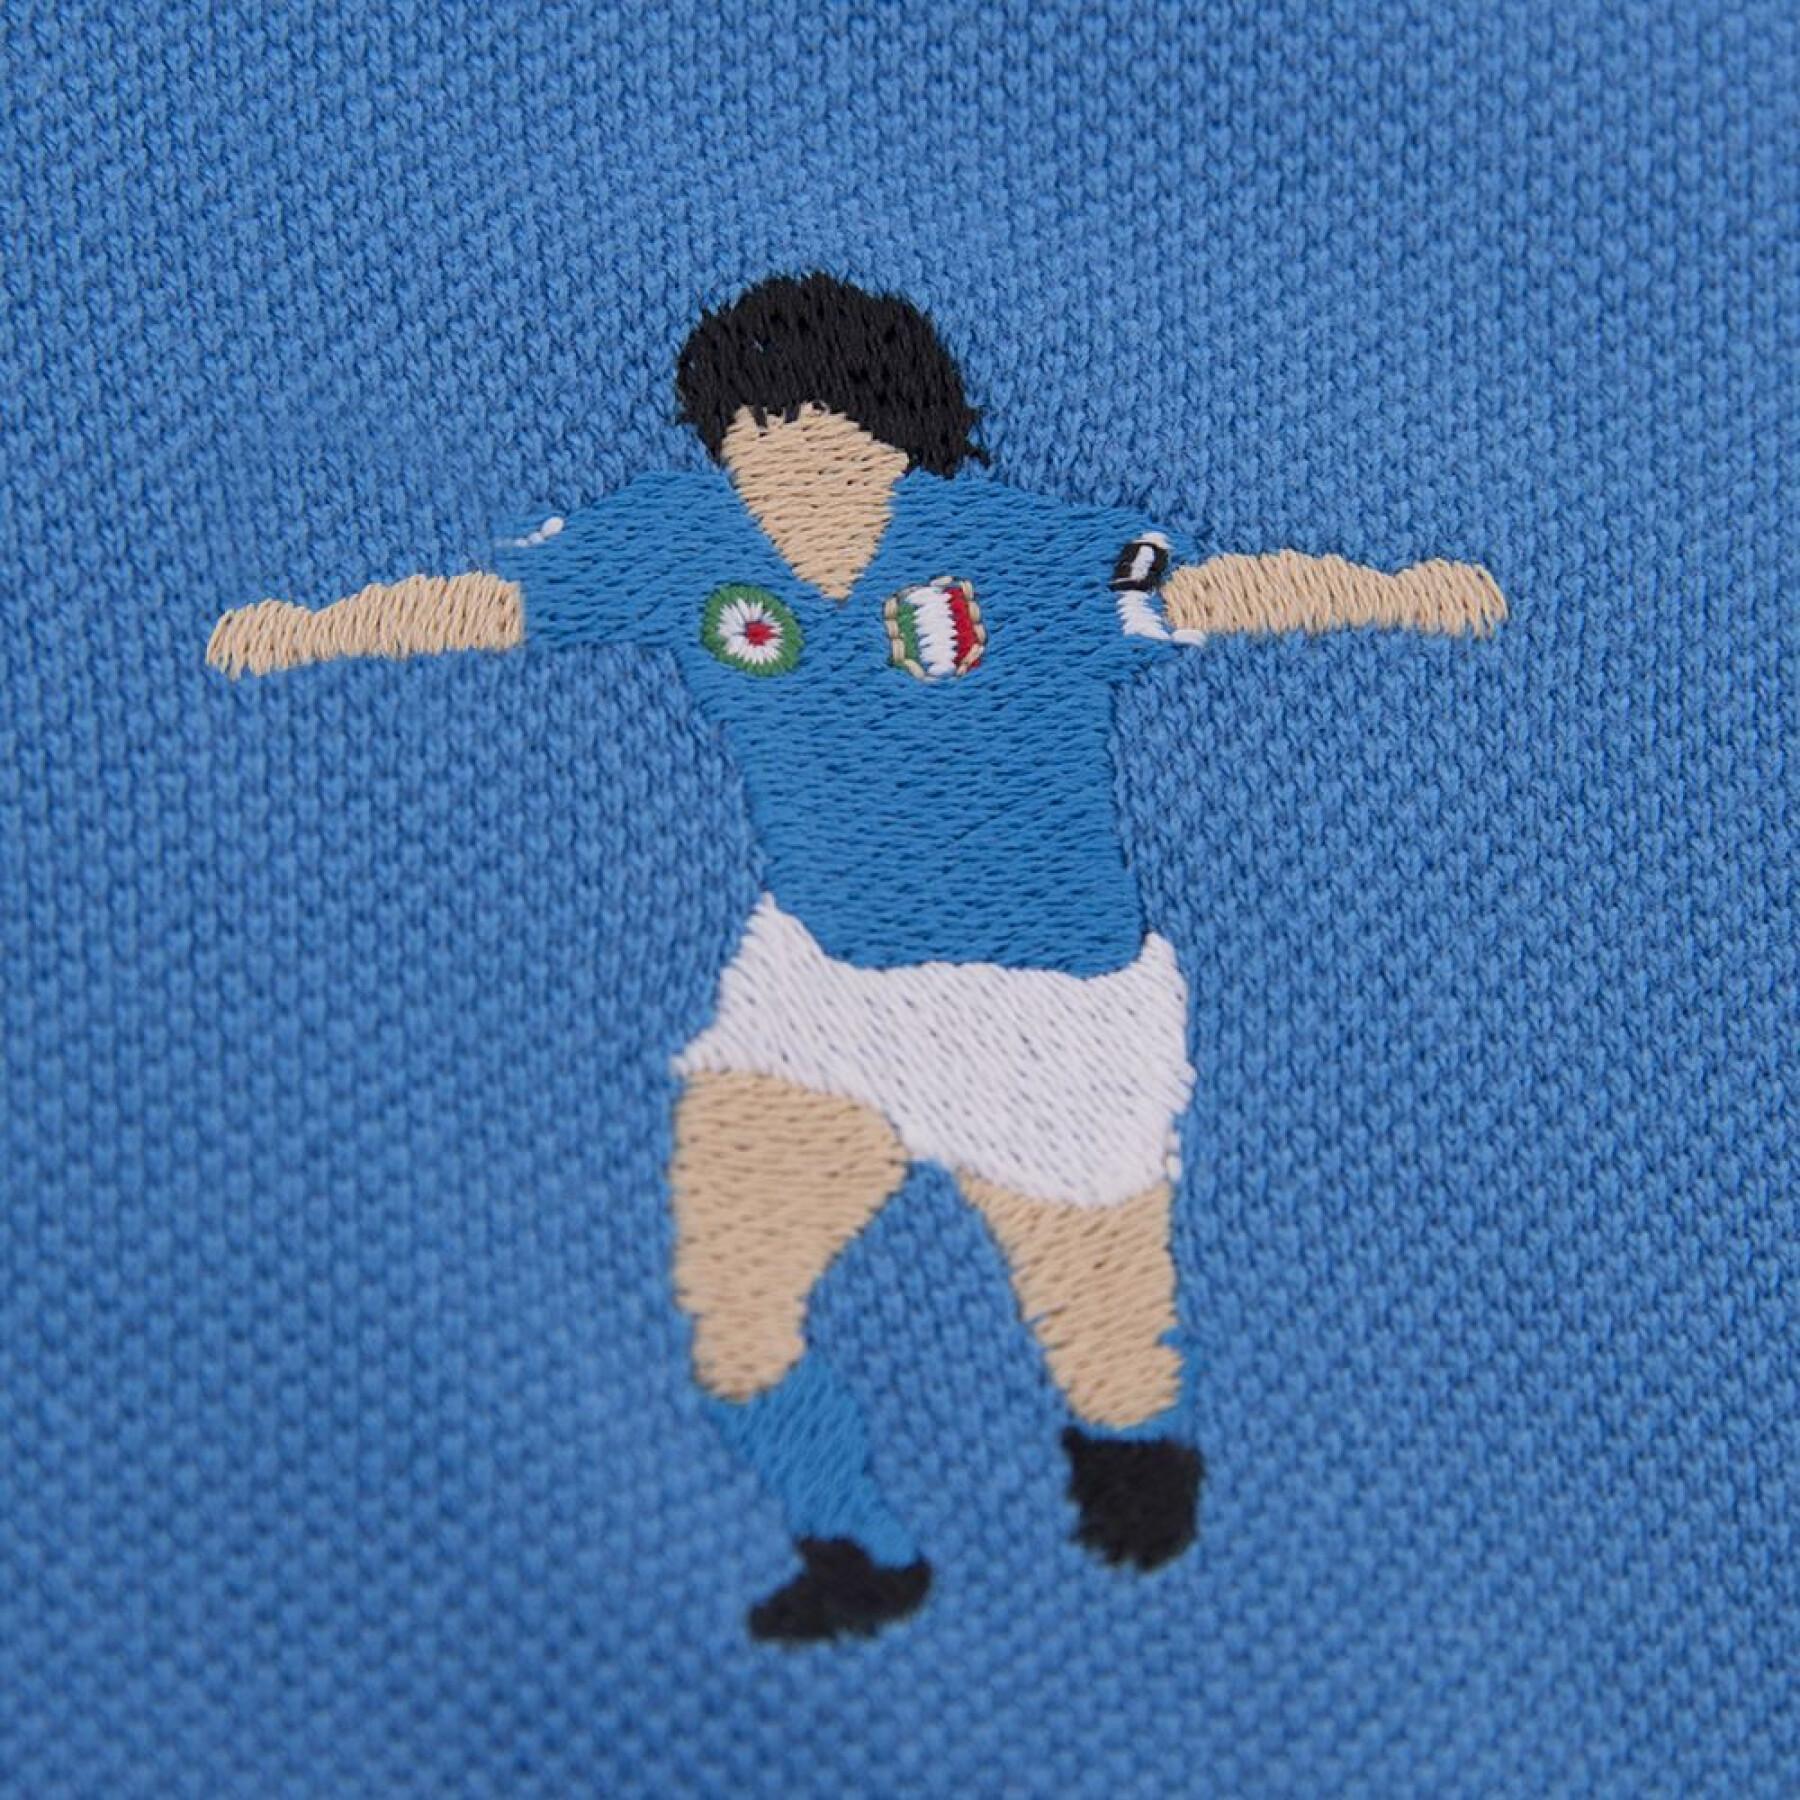 Haftowana koszulka polo Copa SSC Napoli Maradona